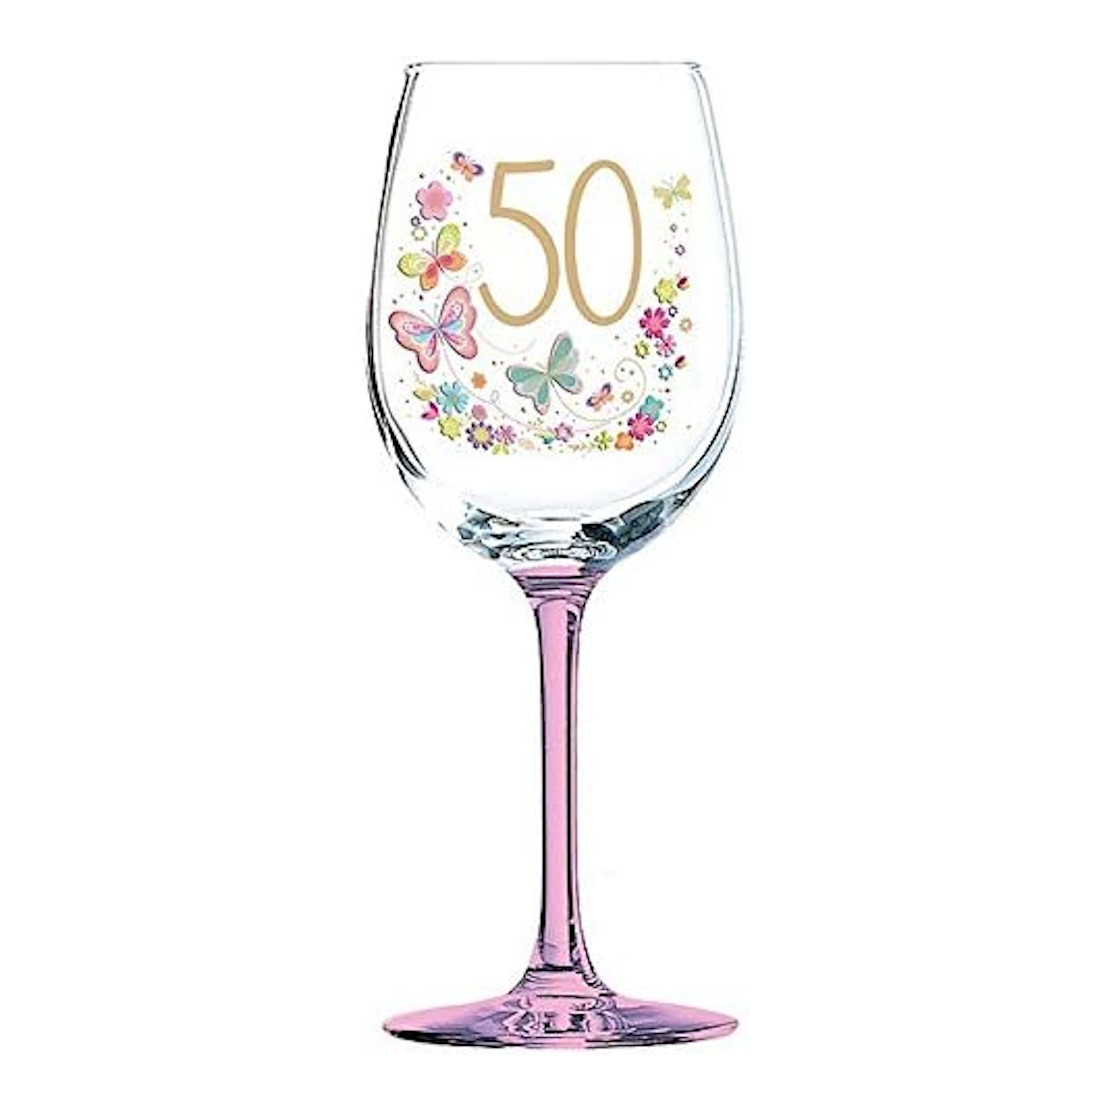 Lulu 50th Birthday Celebration Wine Glass